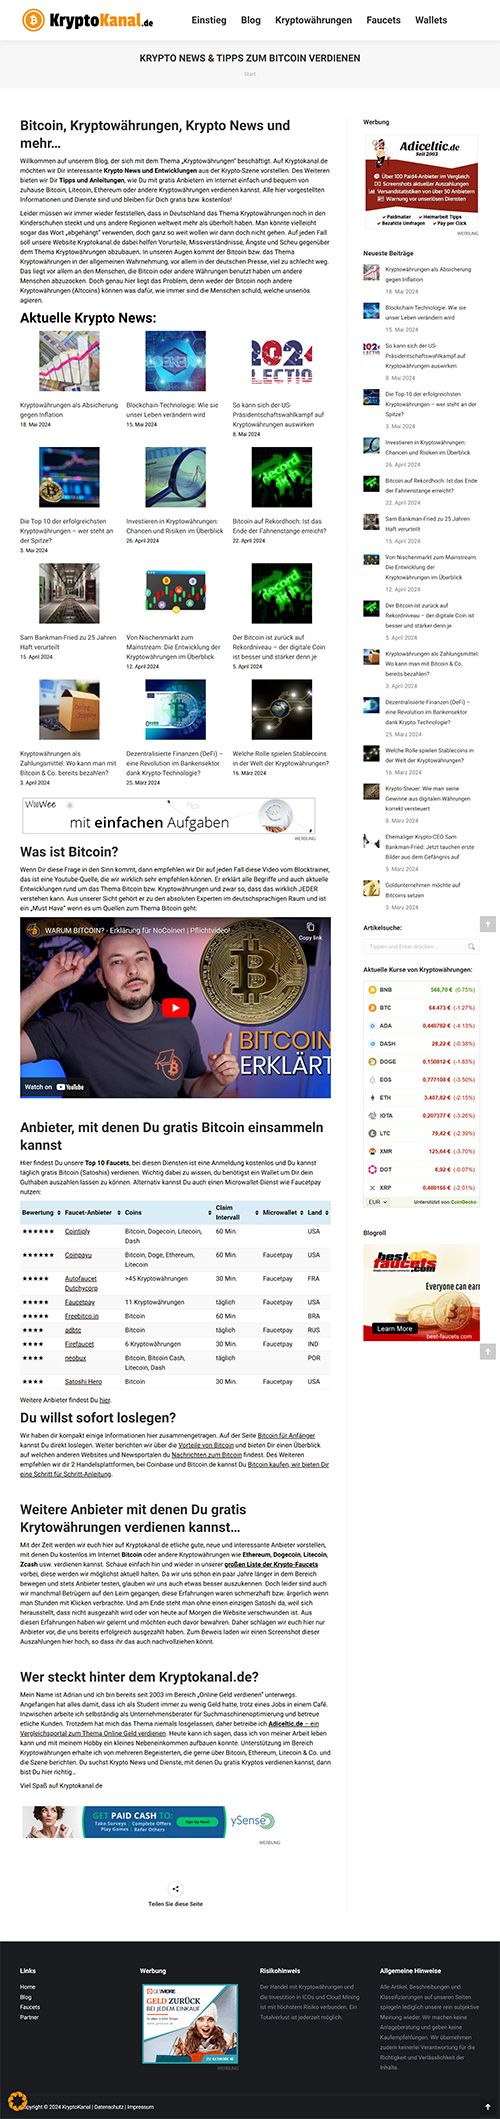 Krypto News - Kryptokanal.de